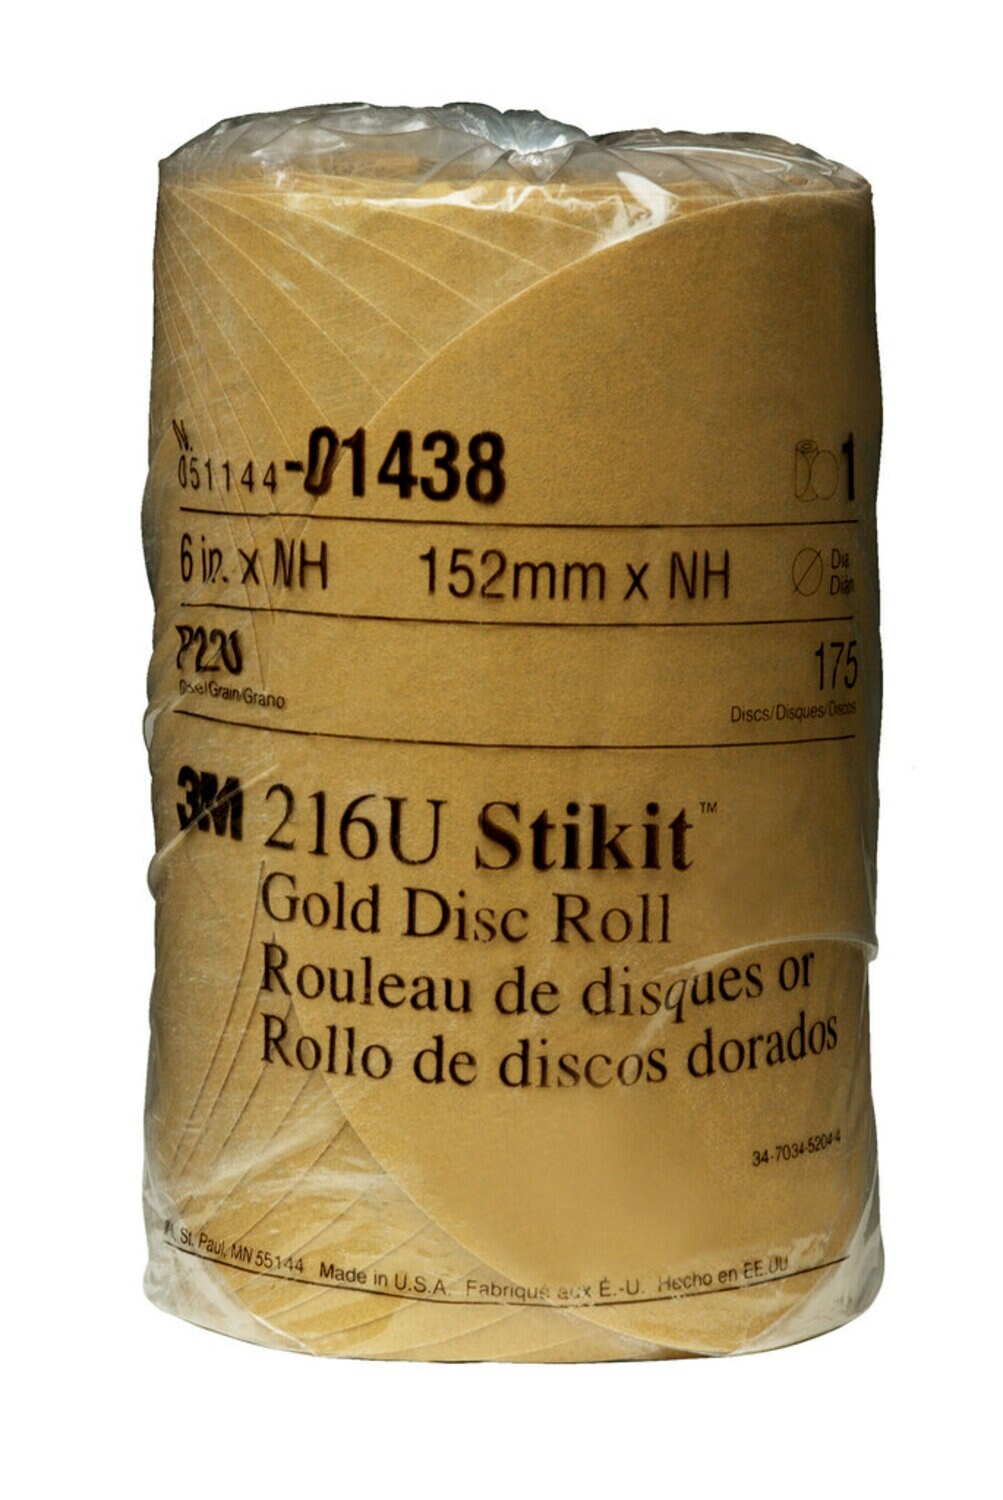 7000119707 - 3M Stikit Gold Disc Roll, 01438, 6 in, P220, 175 discs per roll, 6
rolls per case